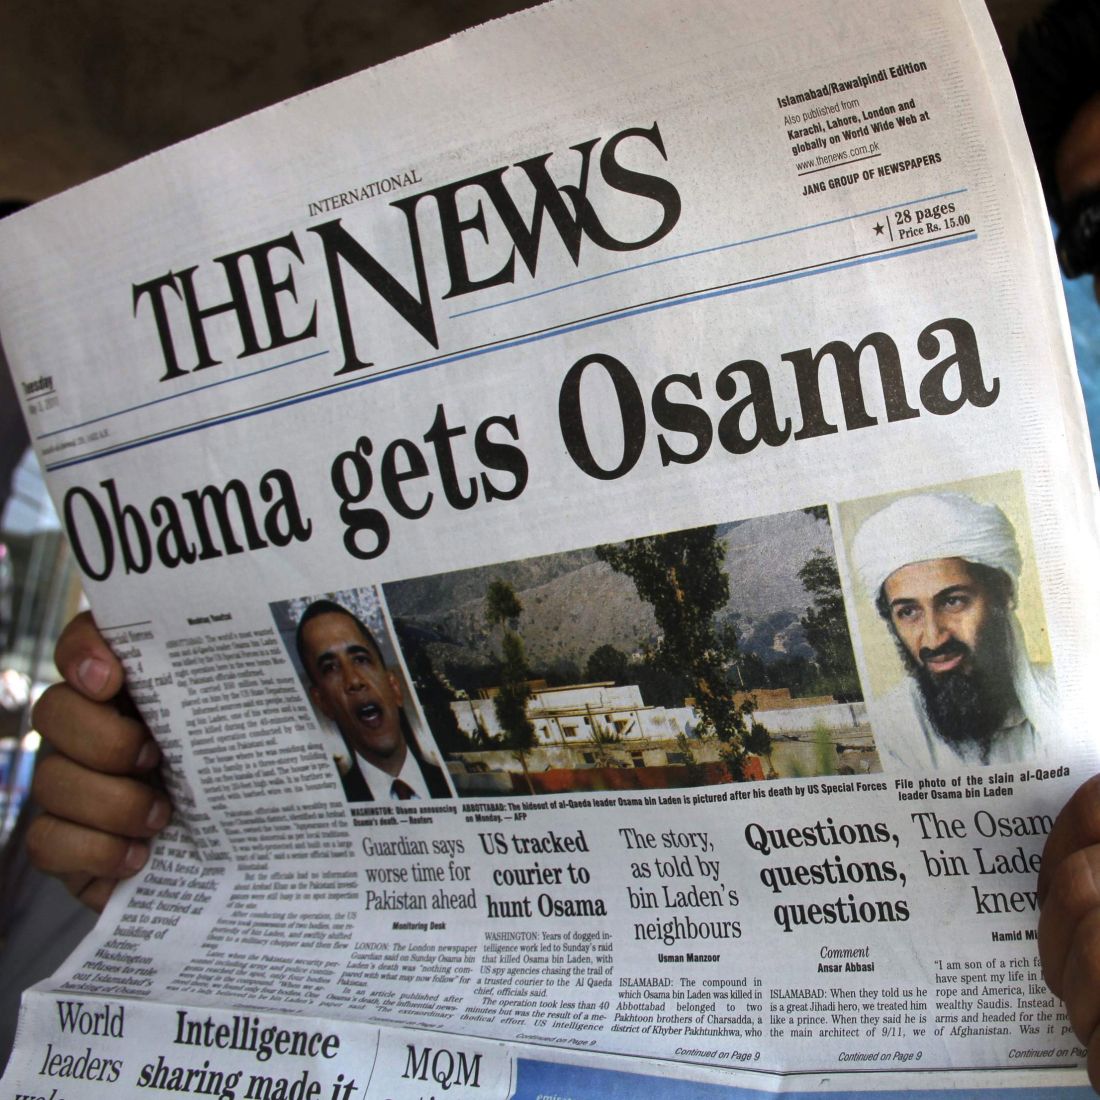 Обама е защитен, но кой ще опази американците, попита терористичната мрежа